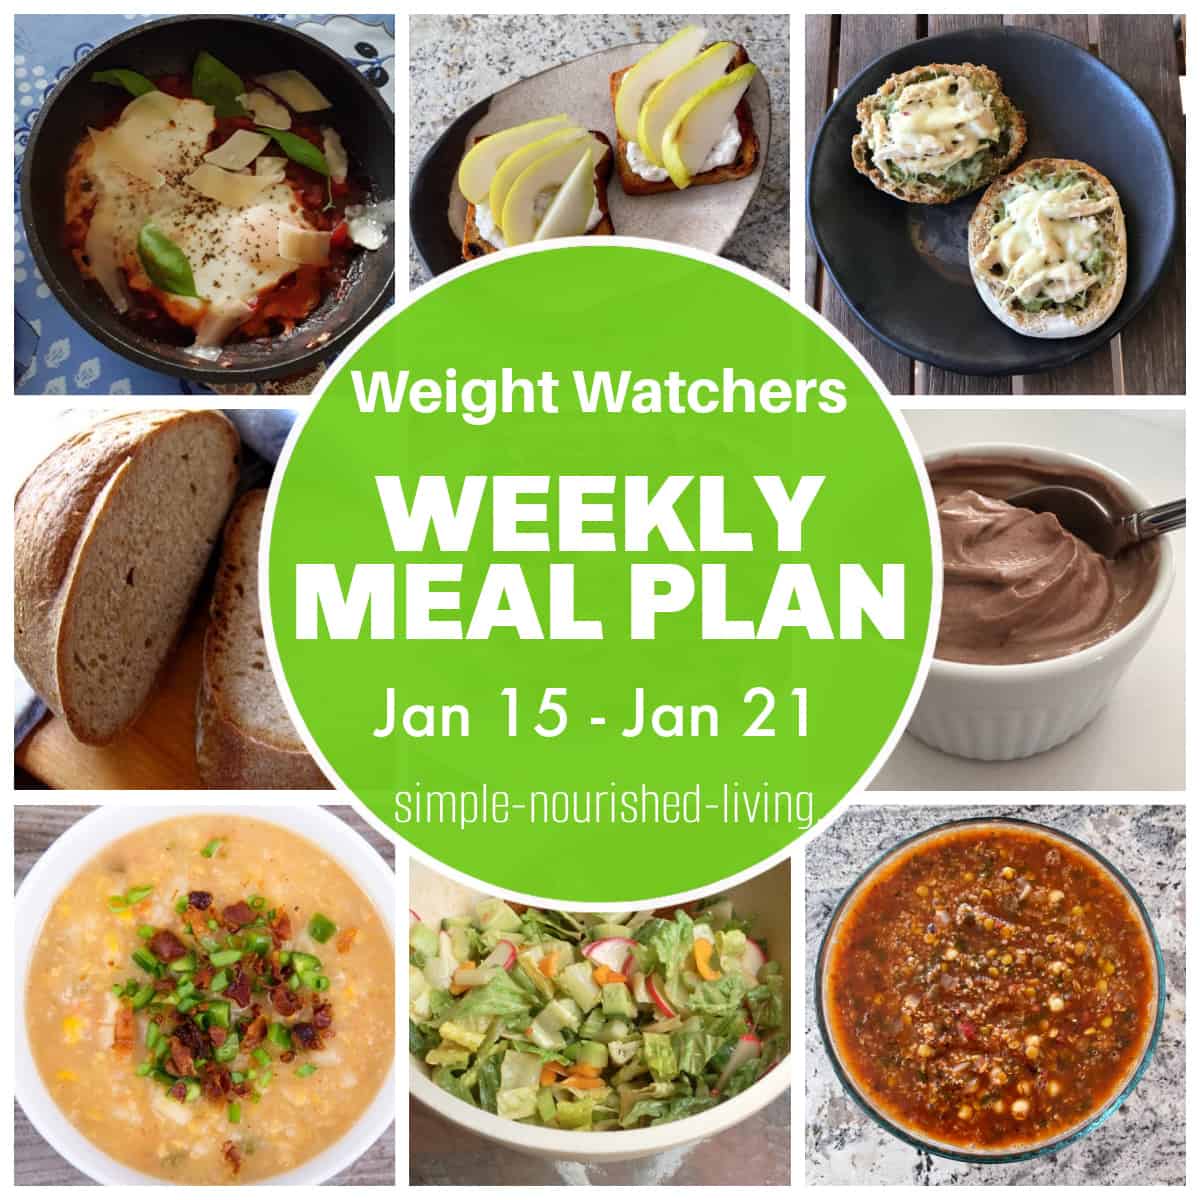 WW Weekly Meal Plan Jan 15